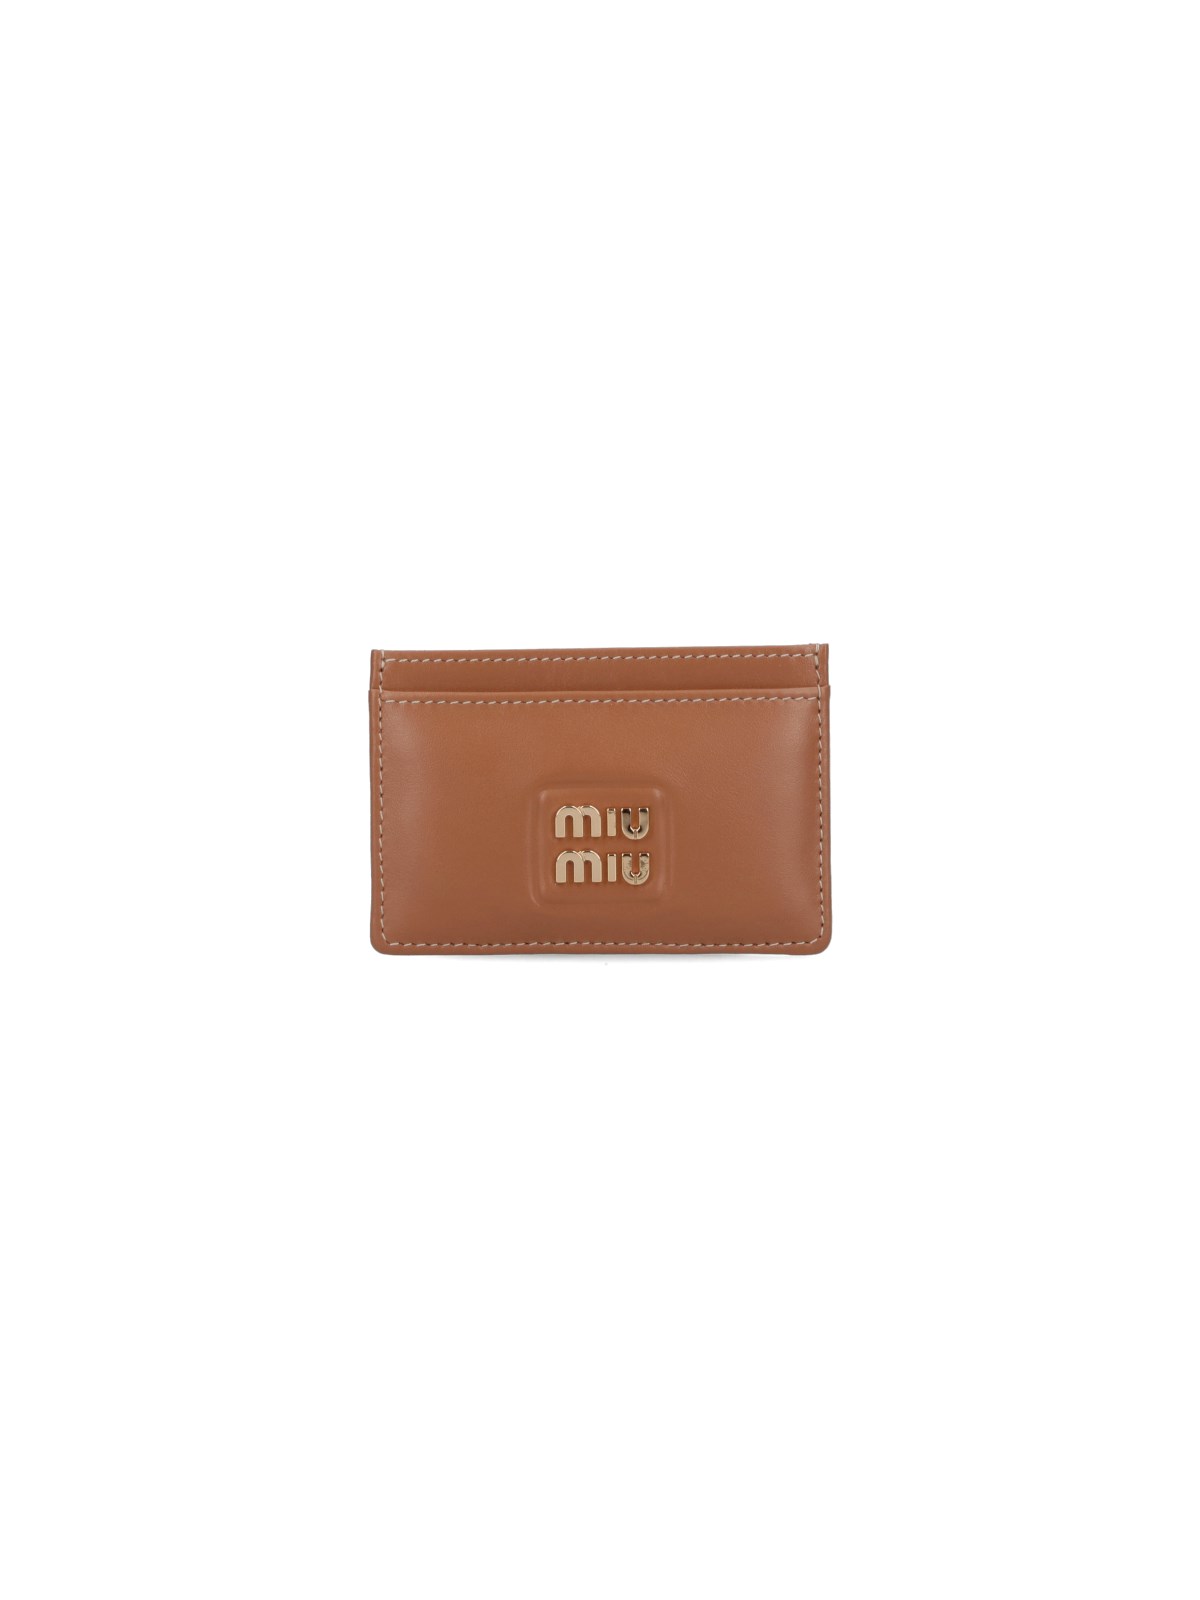 Miu Miu Logo Card Holder In Brown